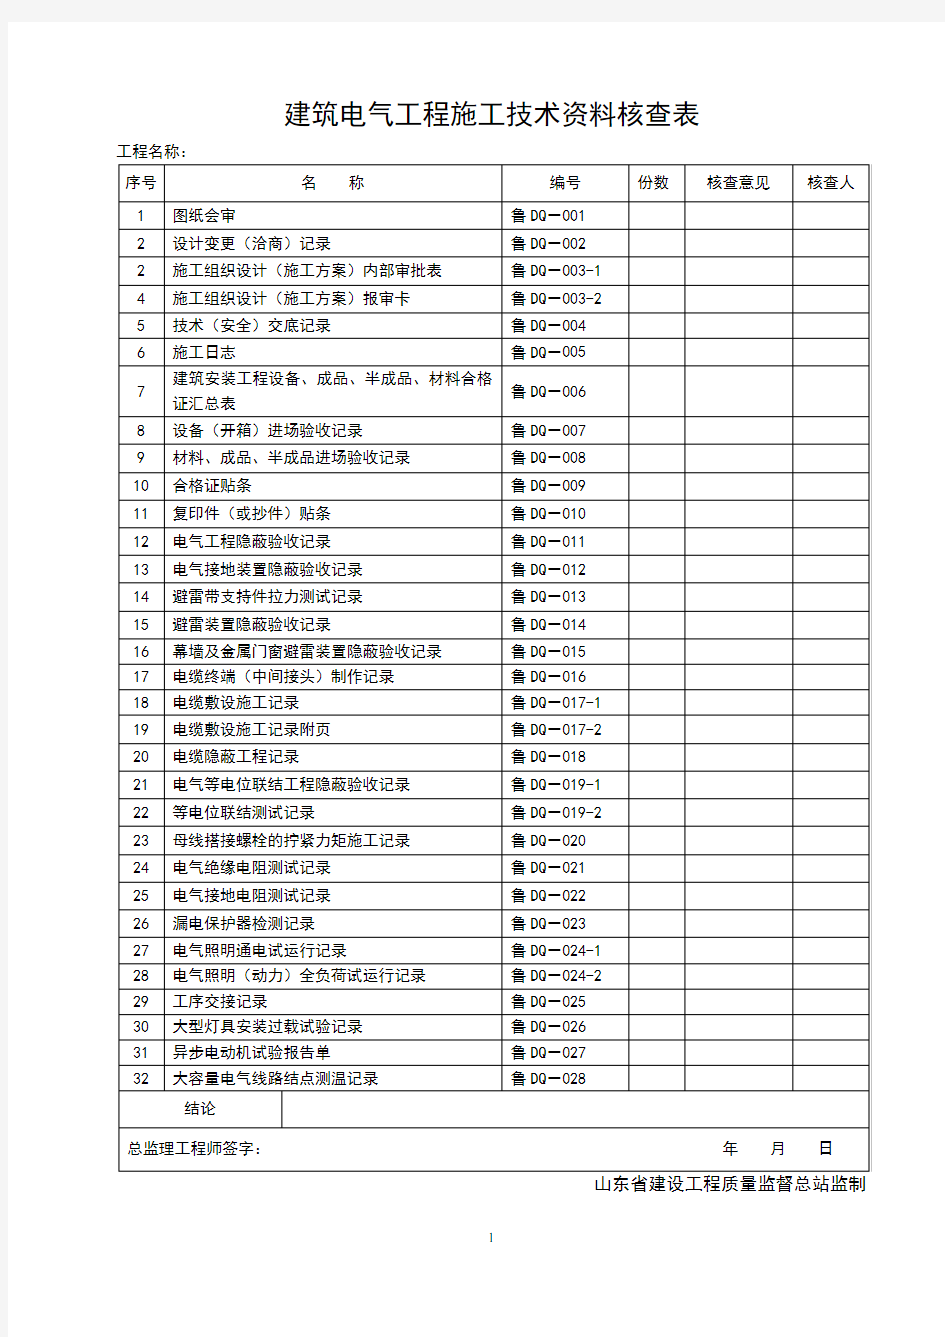 山东省建筑工程施工技术资料管理规程表格(597张)